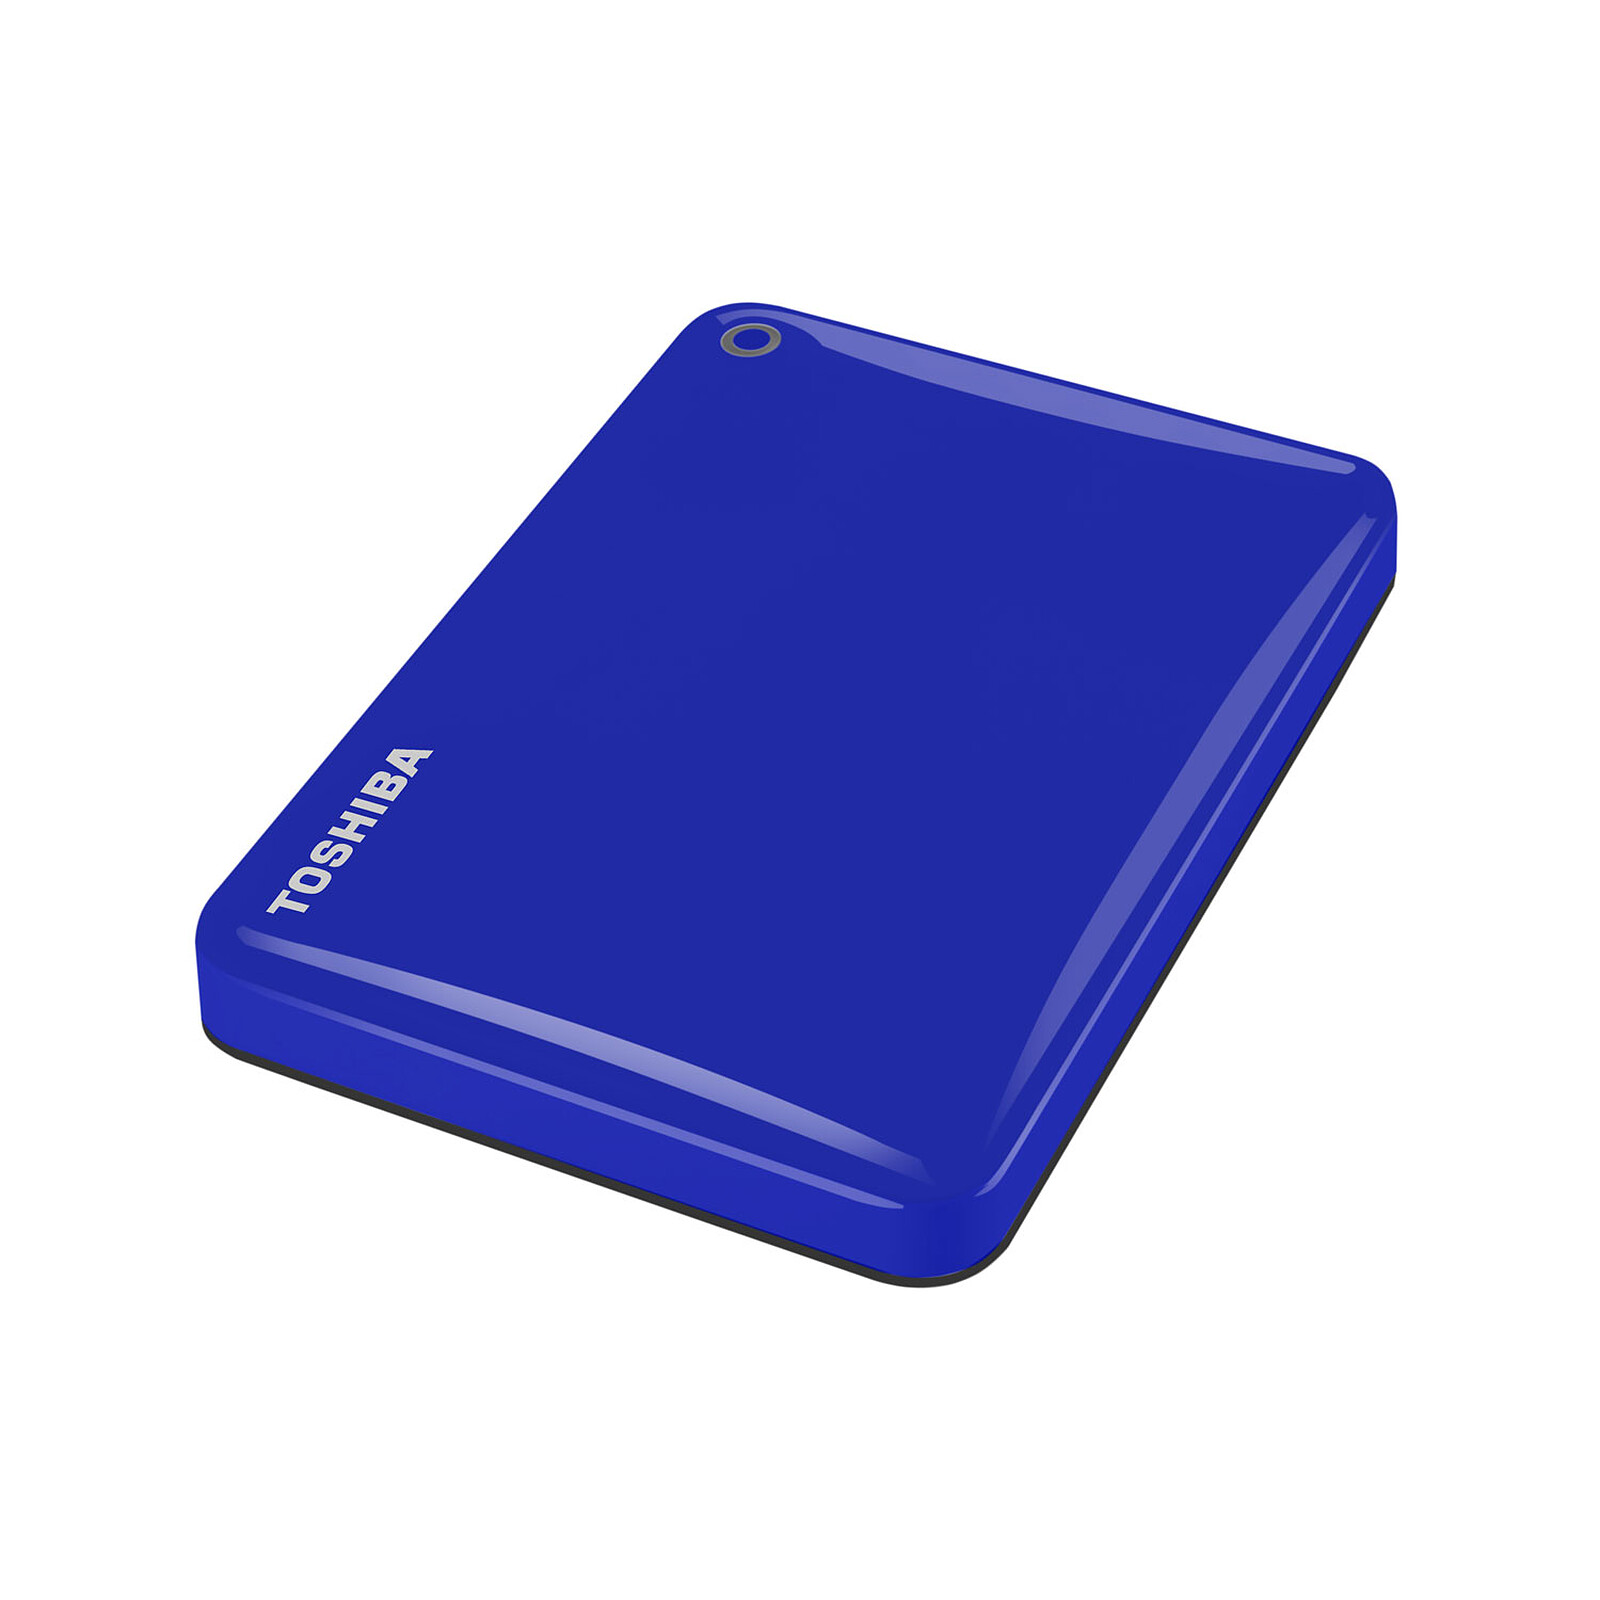 Toshiba Canvio Connect II 3 To Bleu - Disque dur externe